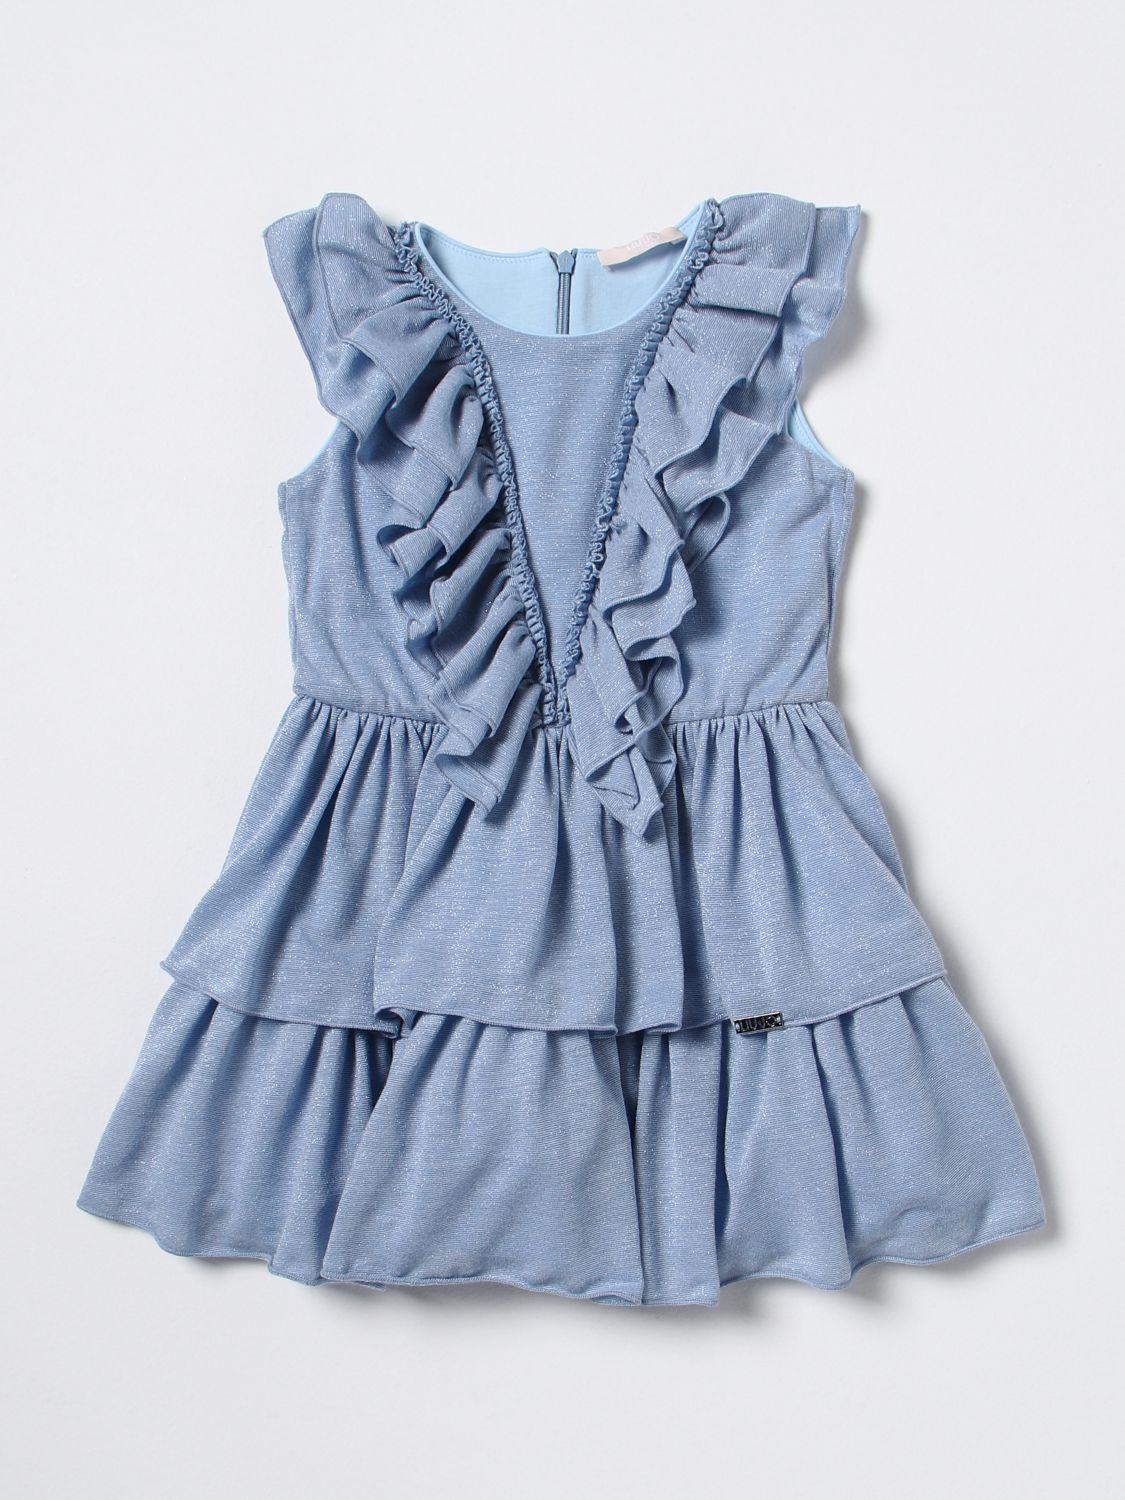 LIU JO KIDS: dress for girls - Gnawed Blue | Liu Jo Kids dress ...